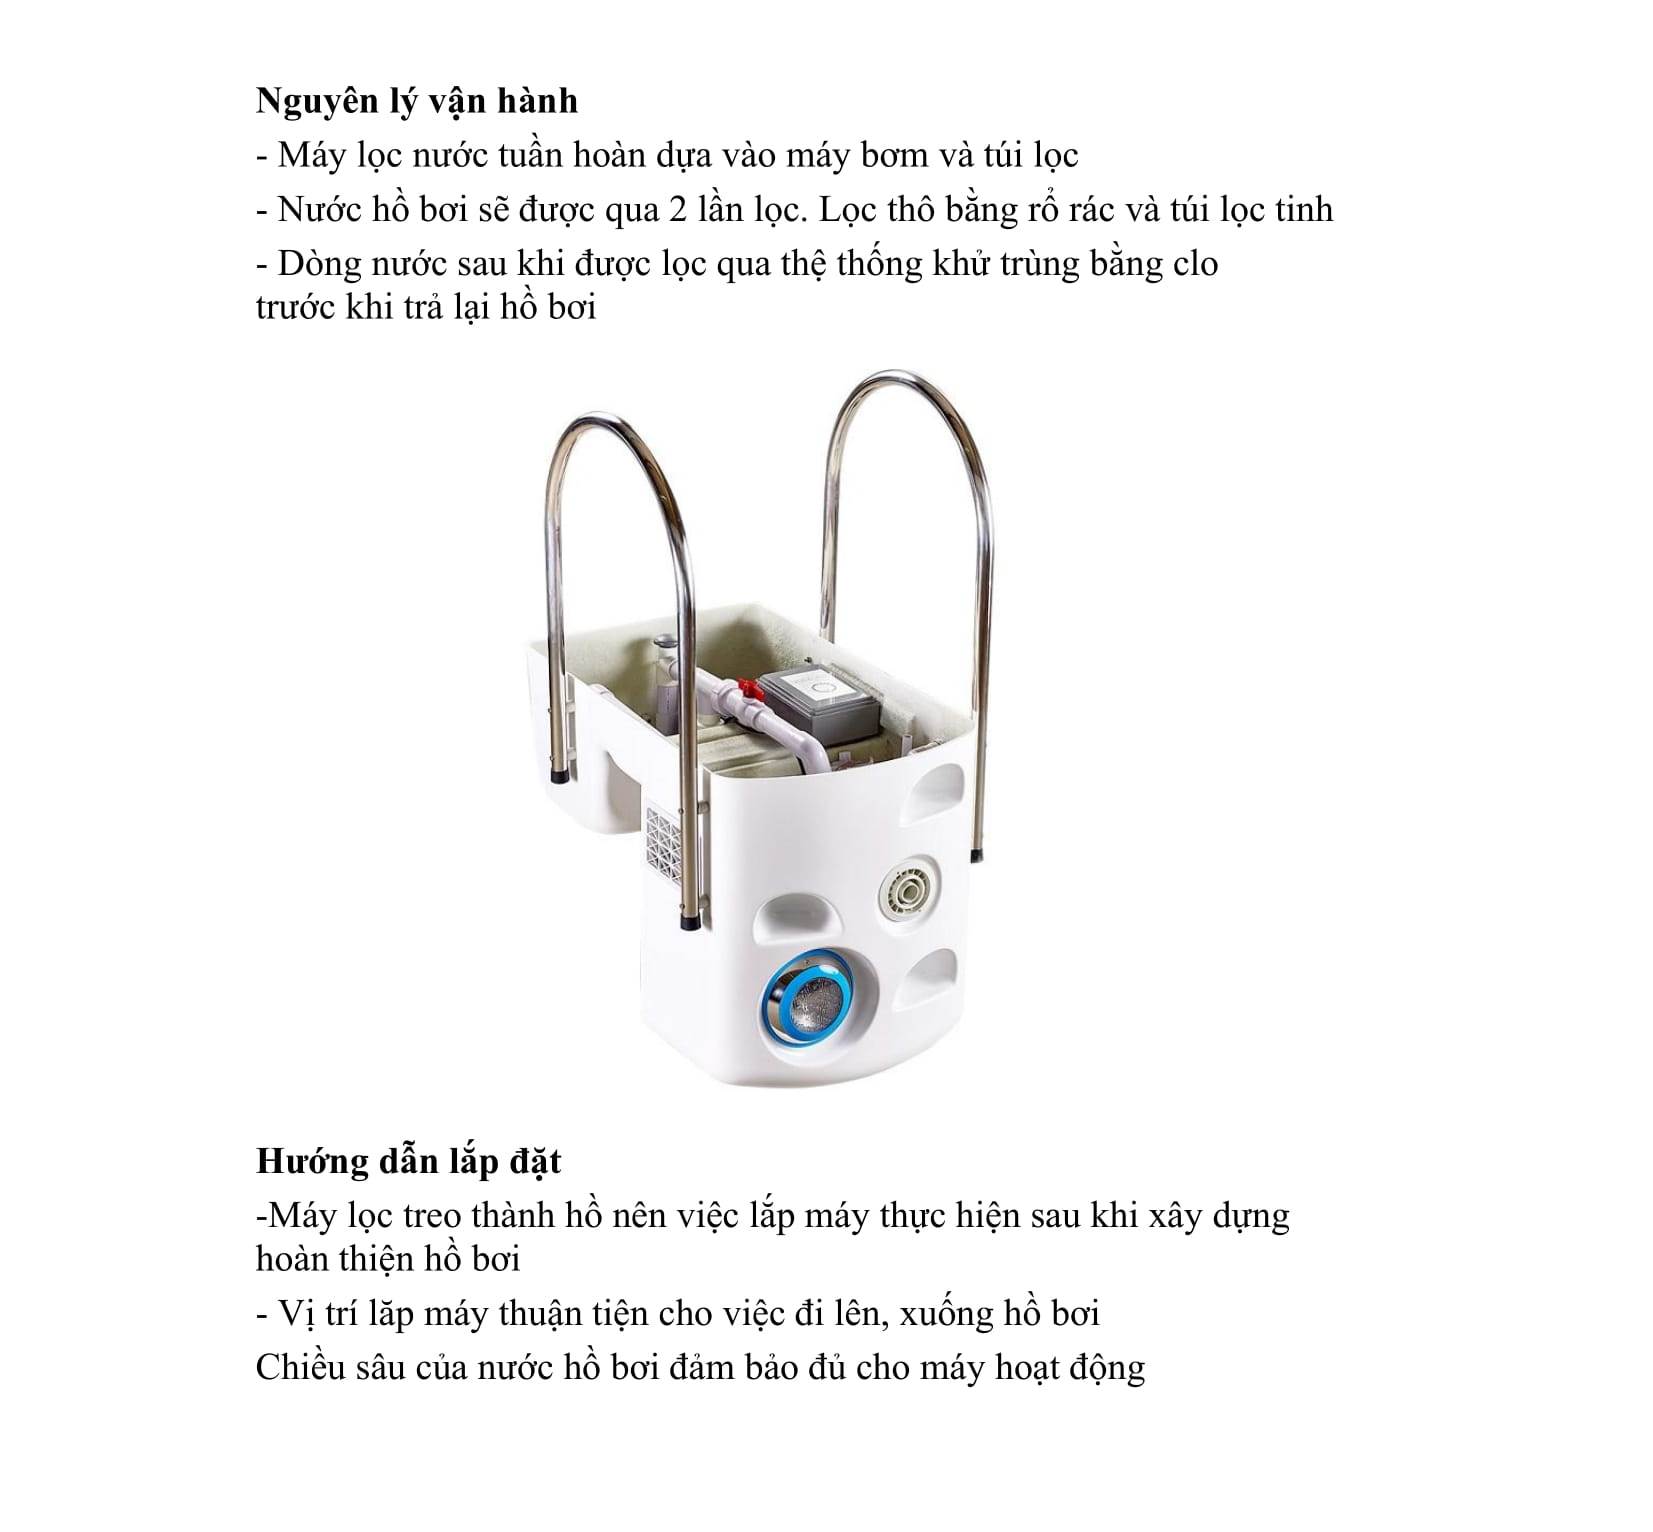 Thiết bị máy lọc nước bể bơi thông minh là một thiết bị tích hợp những tính năng nổi bật của hệ thống lọc nước tuần hoàn không đường ống, không tốn diện tích xây dựng